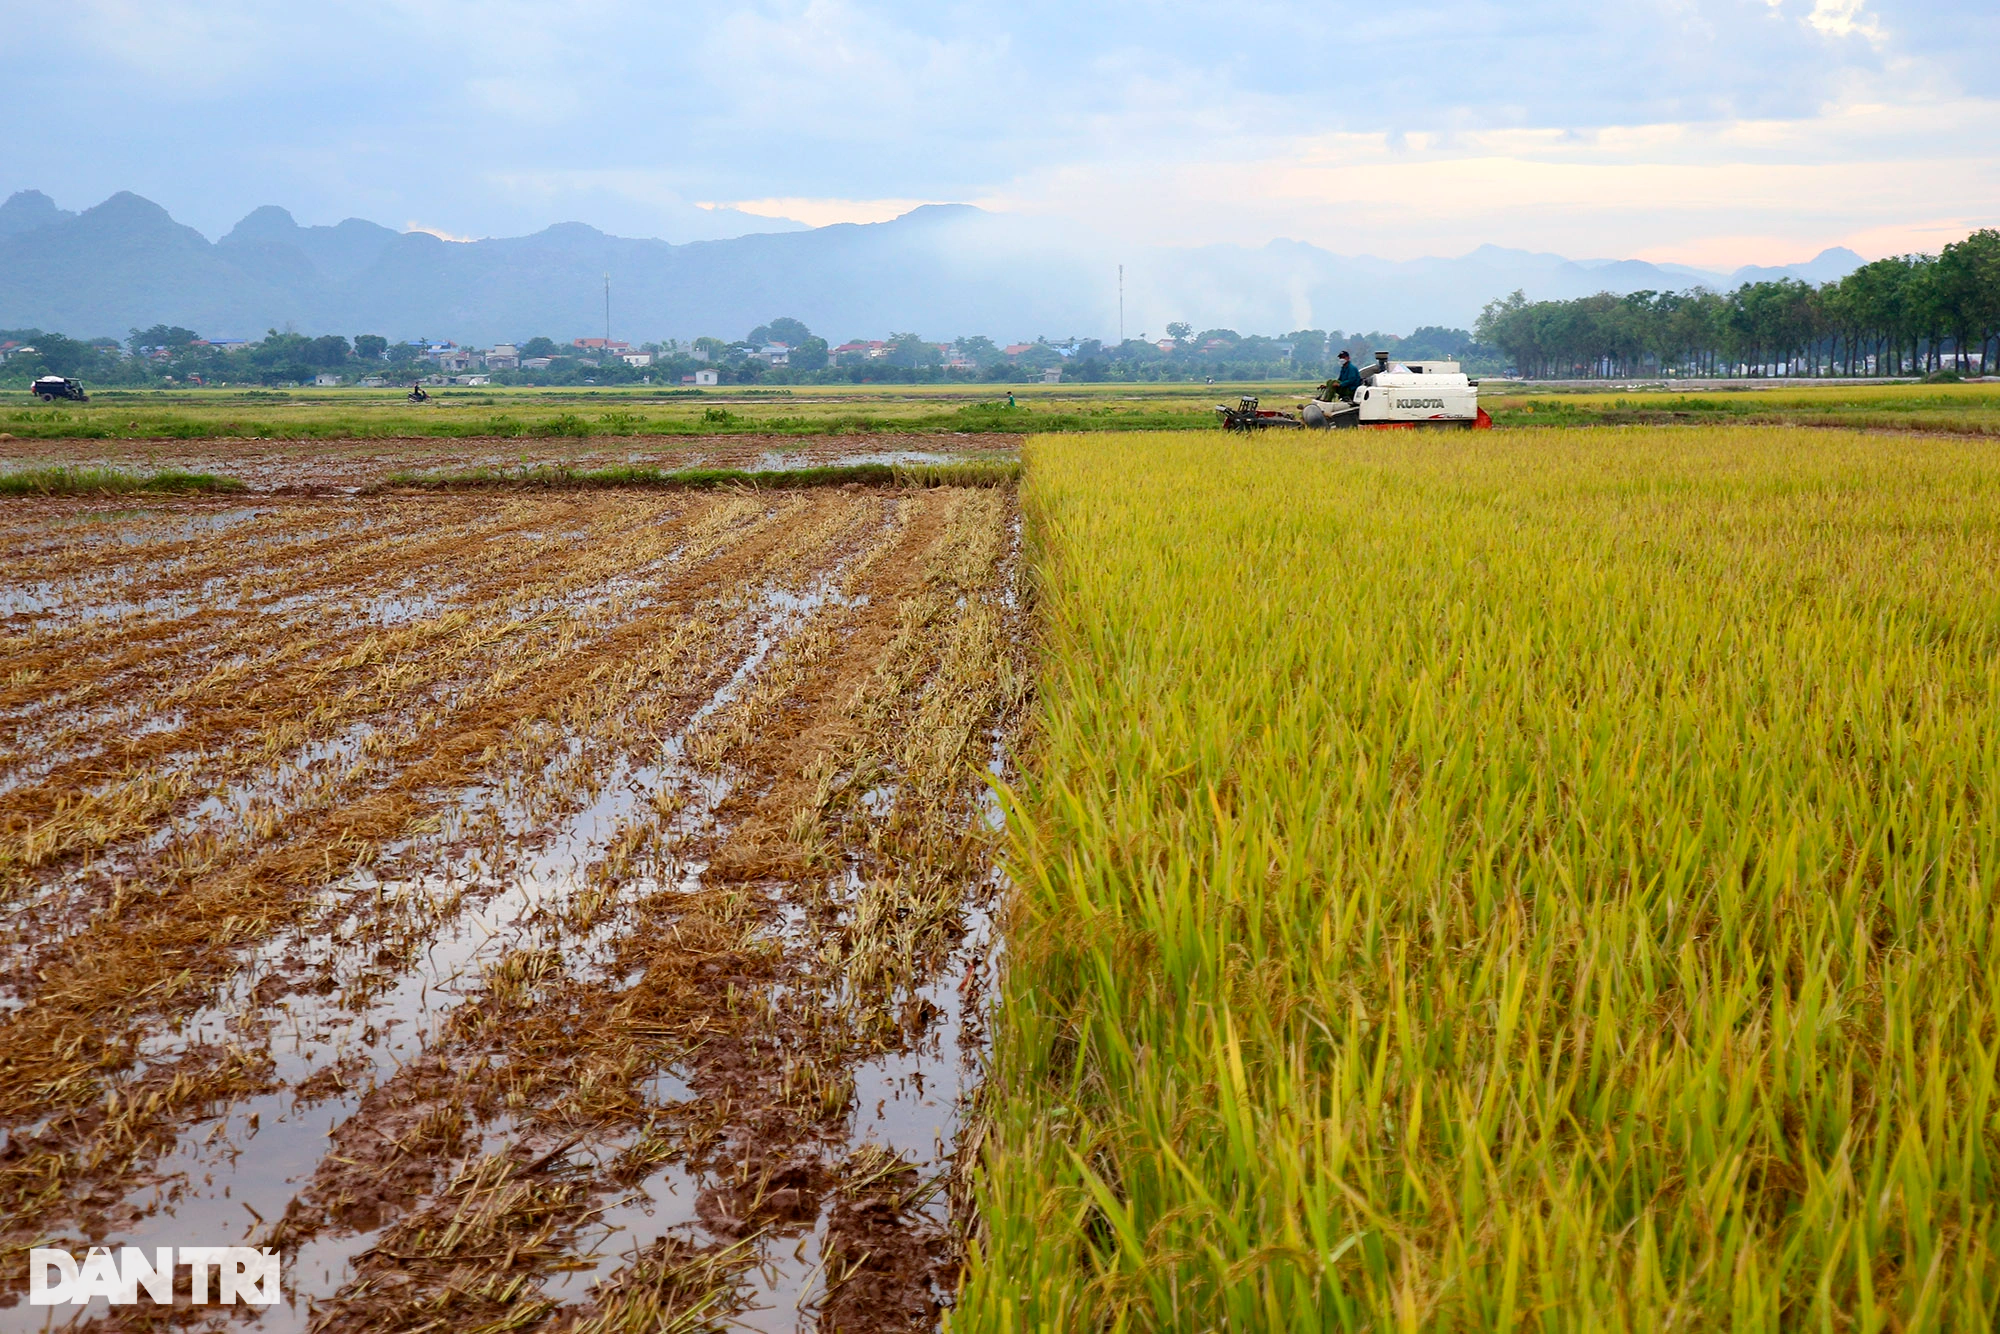 Ngắm đồng lúa thẳng cánh cò bay trong mùa gặt ở ngoại thành Hà Nội - 12